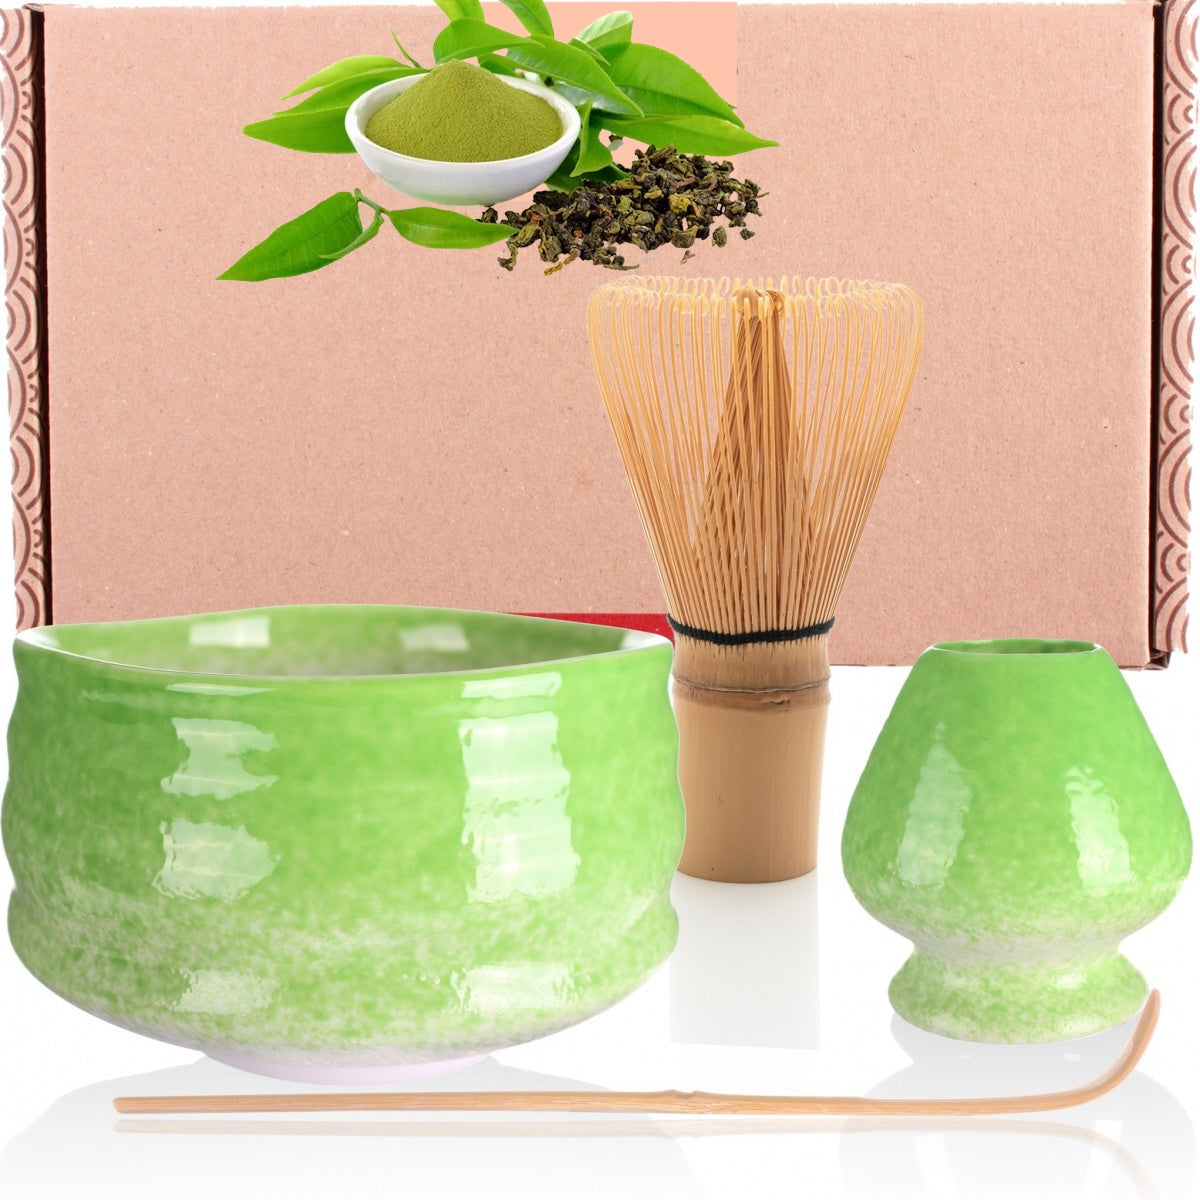 Matcha Green Tea Set - Midori incl. broom